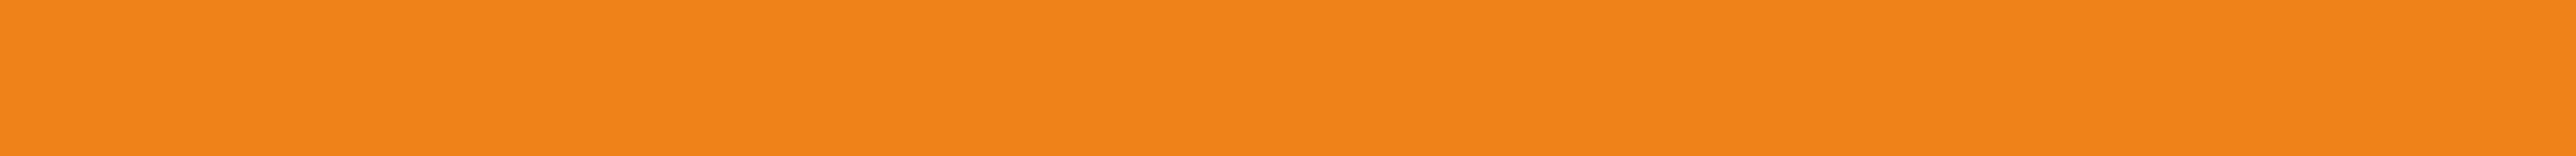 Бордюр Rako Concept оранжевый 1.5x25 VLAG8001